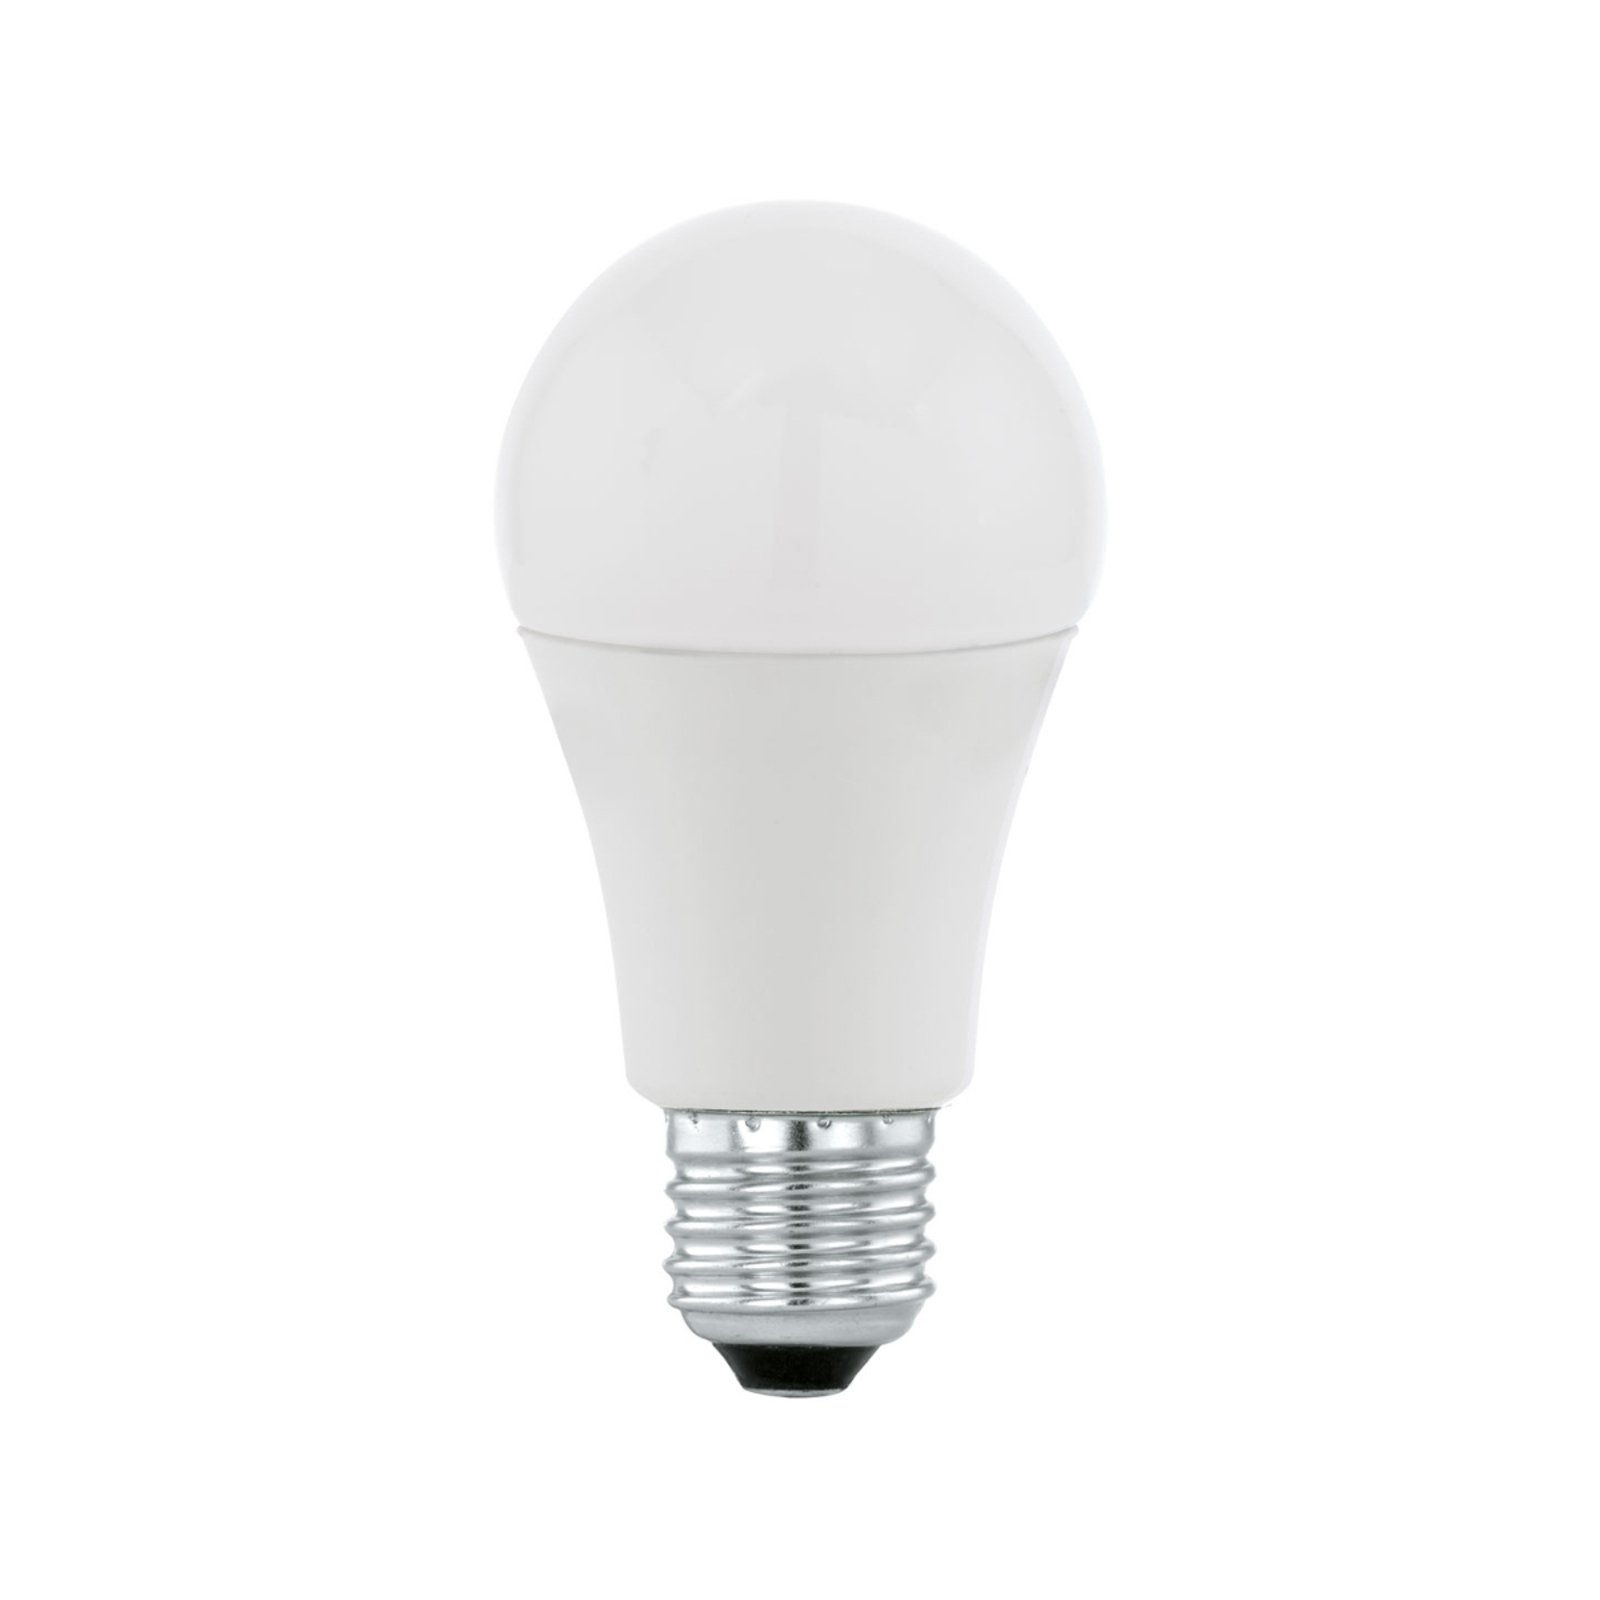 Ampoule LED E27 A60 9 W, blanc chaud, opale